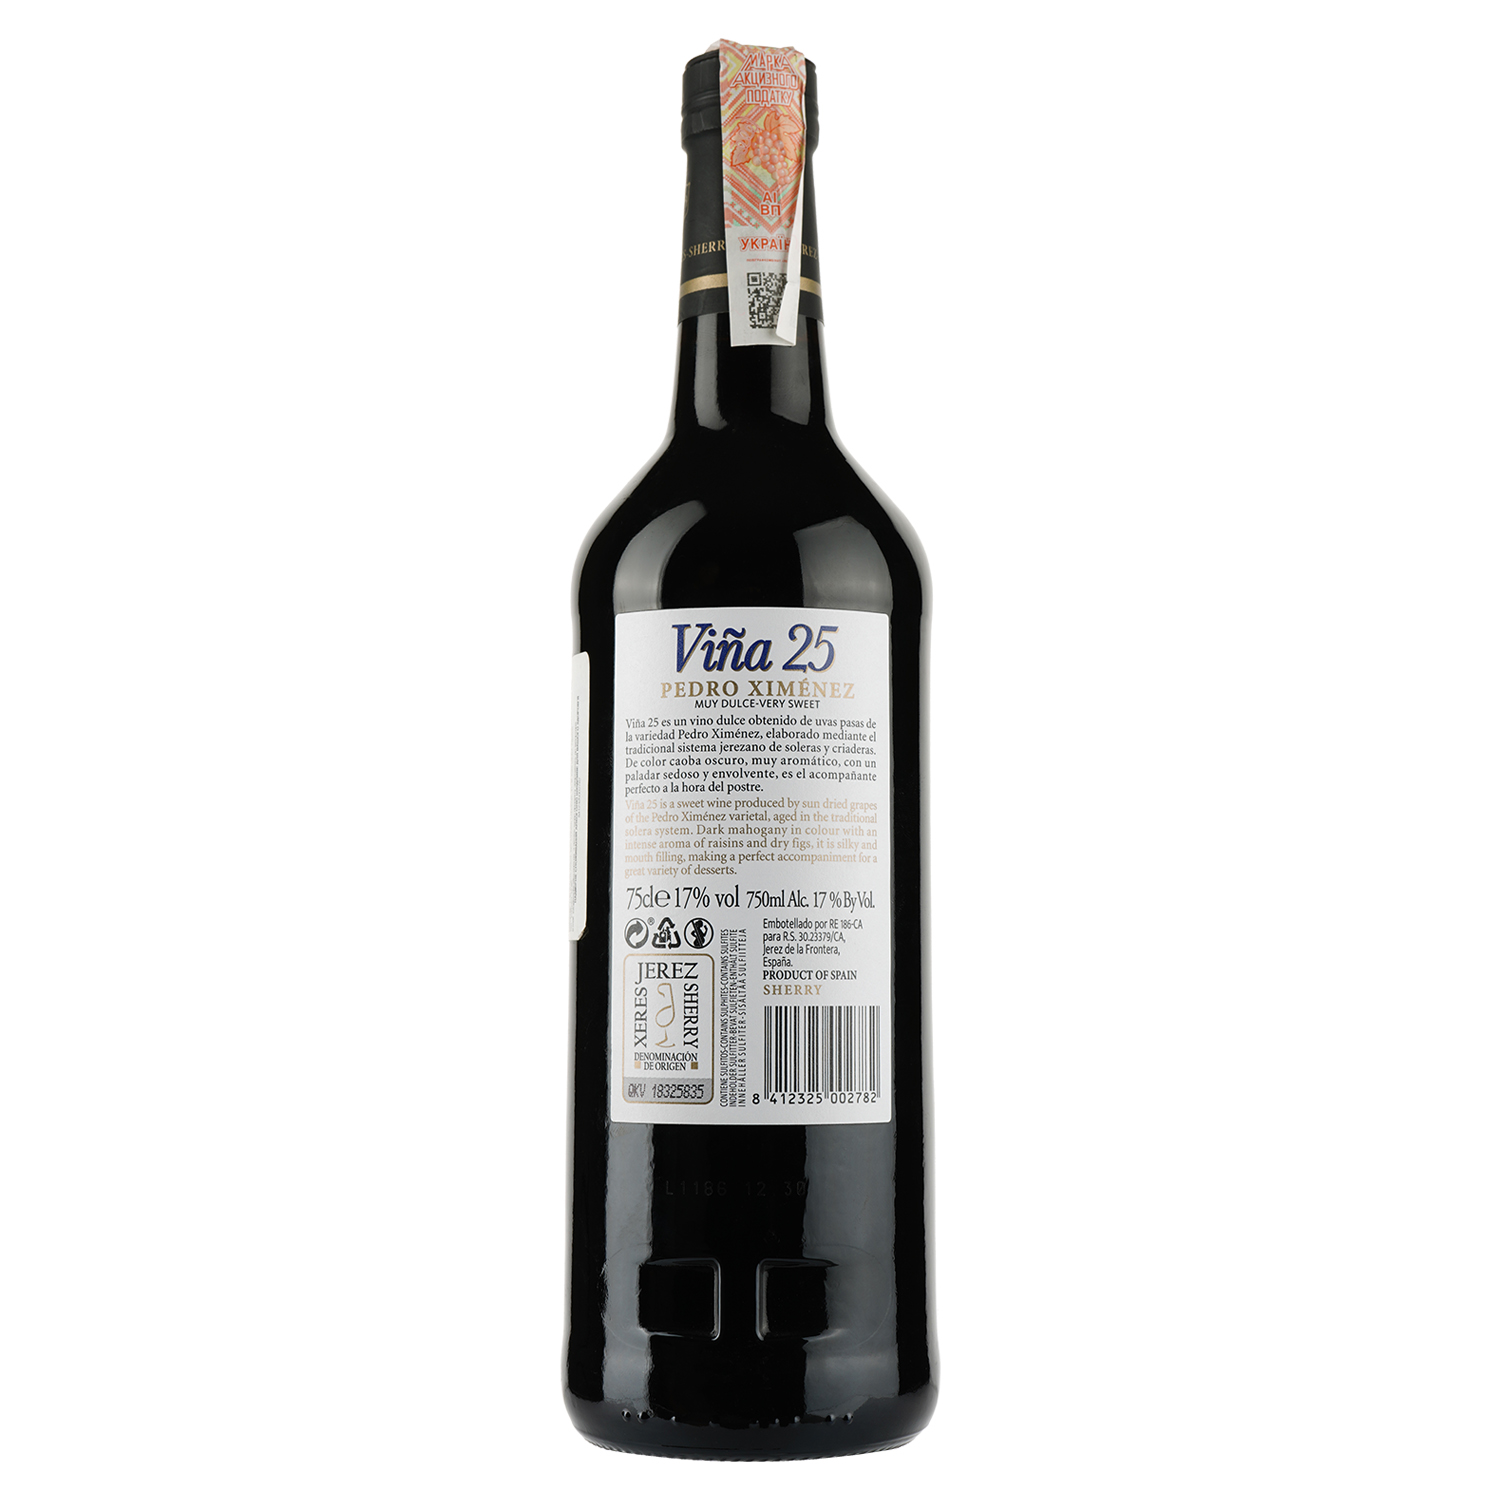 Вино La Ina херес Pedro Ximenez Sherry Vina 25, красное, сладкое, 17%, 0,75 л - фото 2